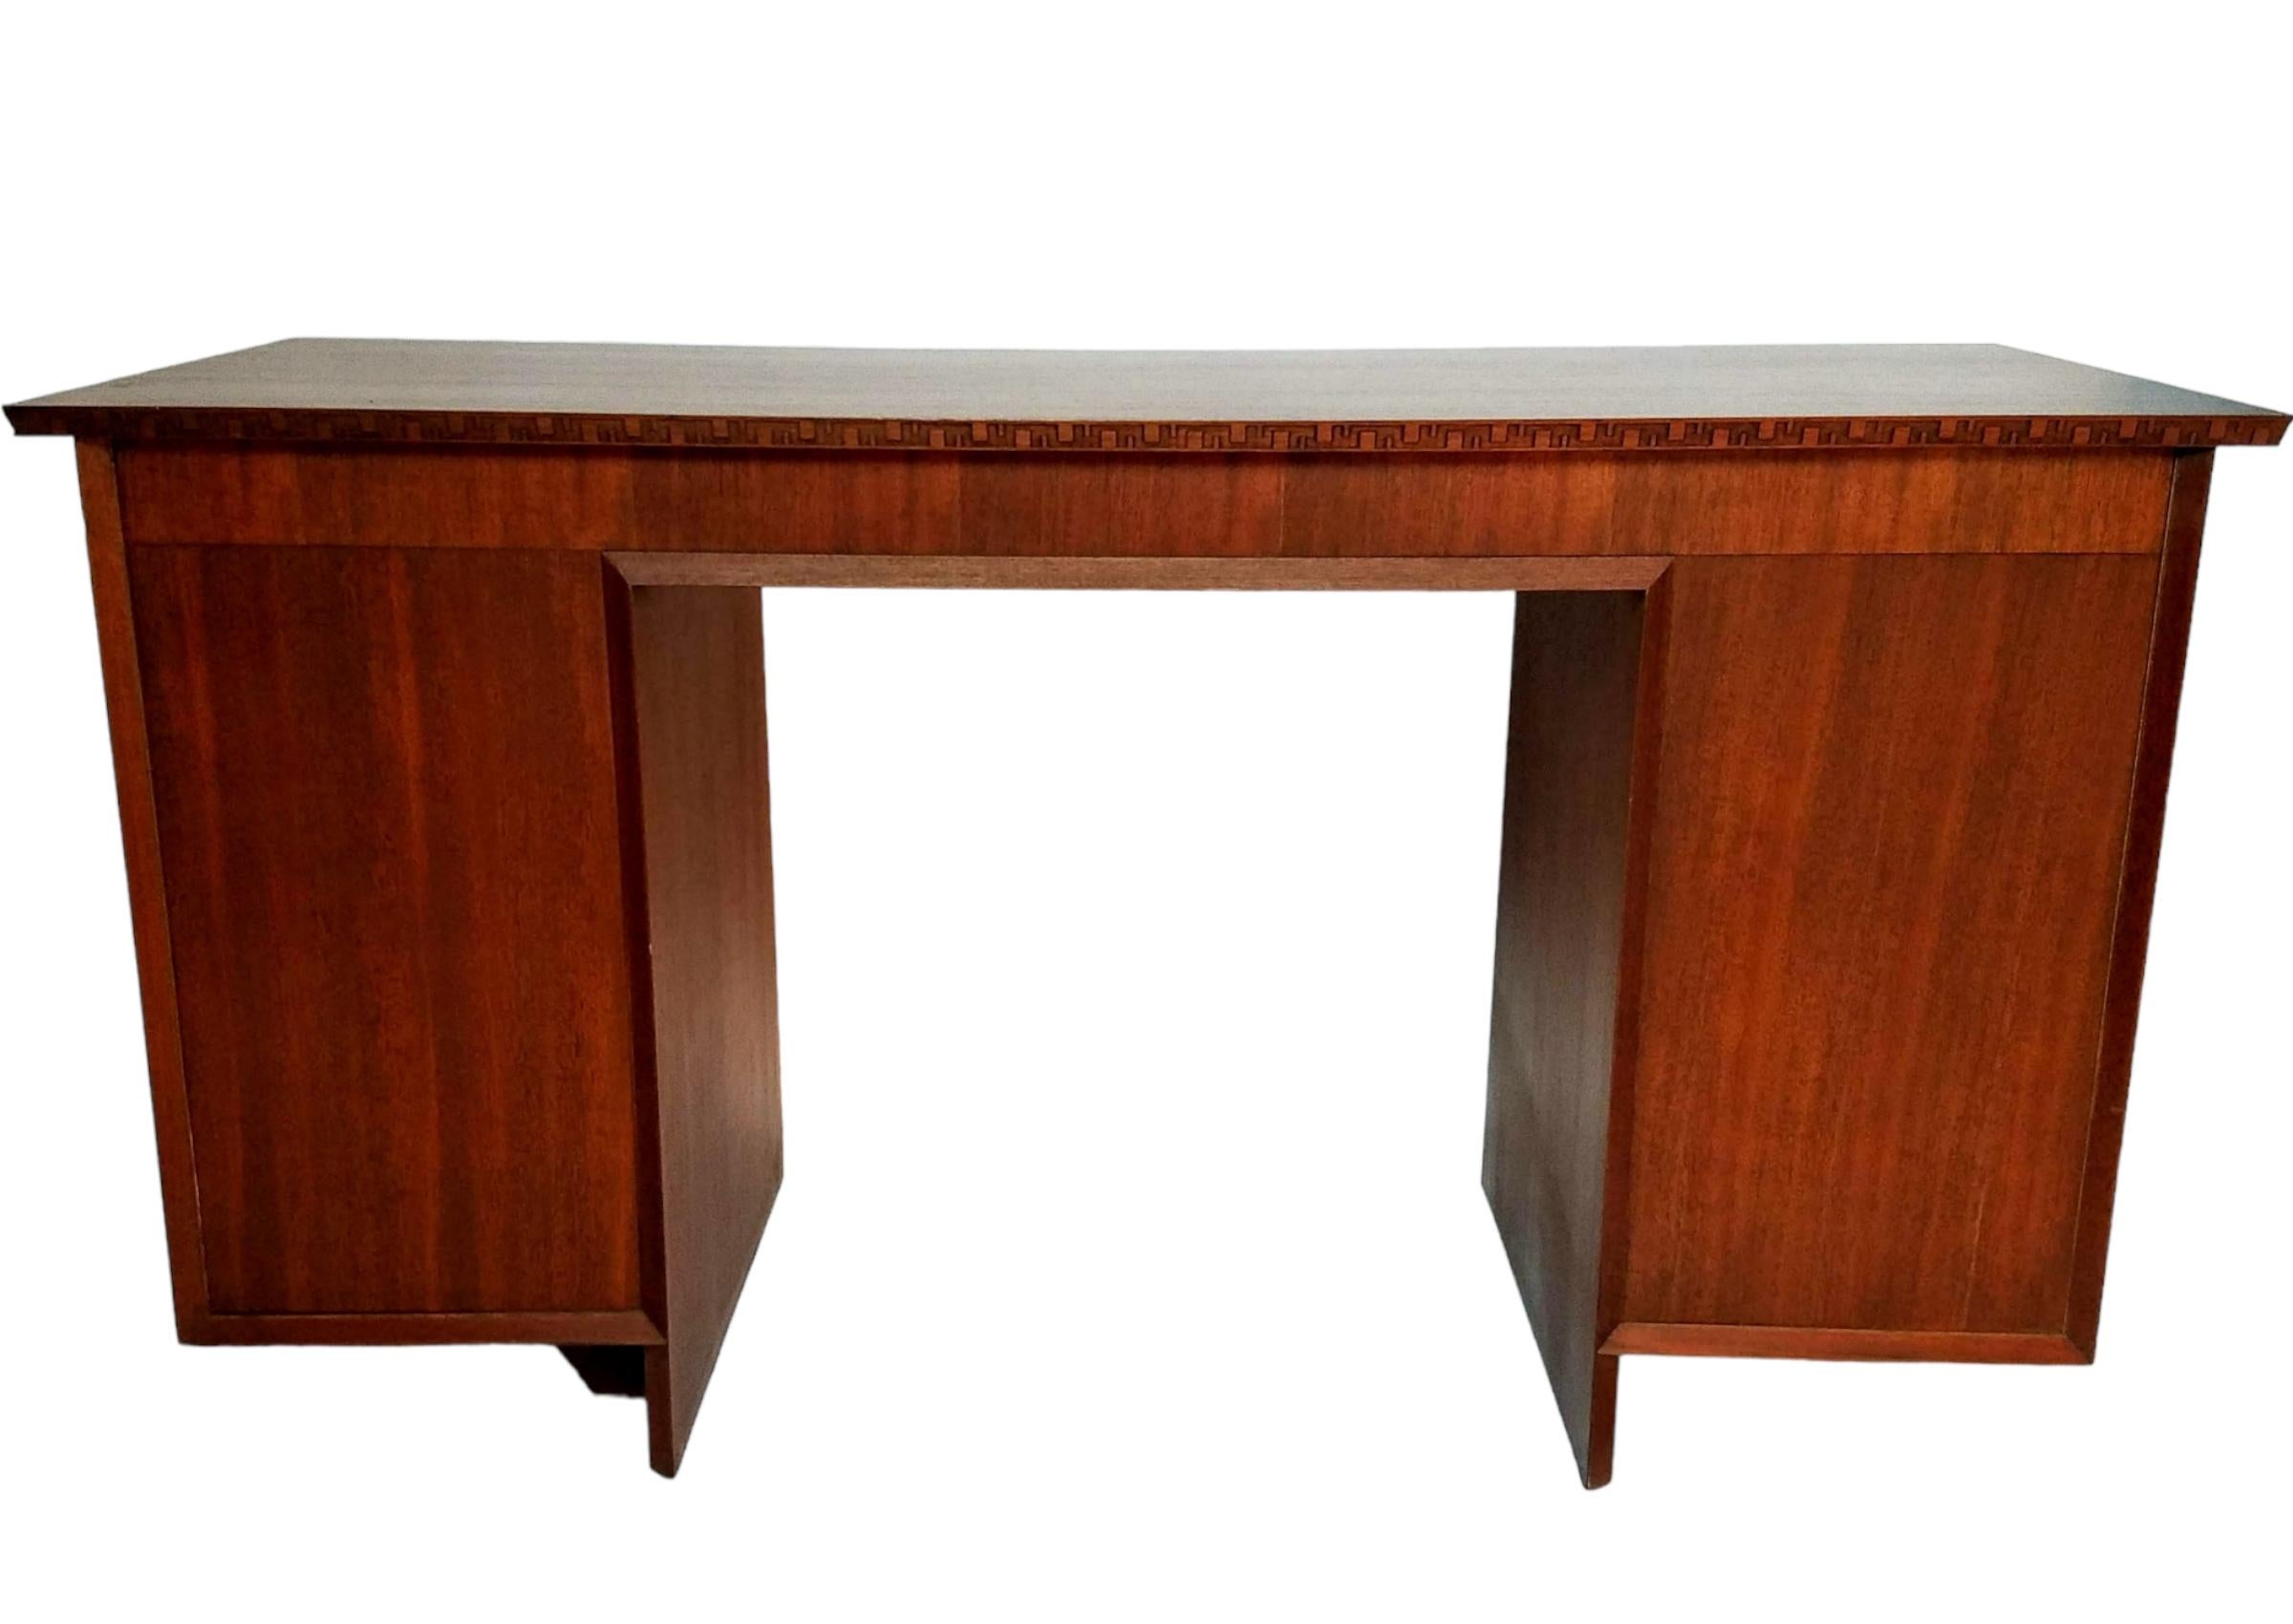 Ein klassischer Schreibtisch mit neun Schubladen aus Mahagoni, den Frank Lloyd Wright für seine Taliesin-Linie für Heritage-Henredon-Möbel entworfen hat.
Die Unterkante der Platte und die Kanten der beiden Stützen unter den Schubladen sind mit einer